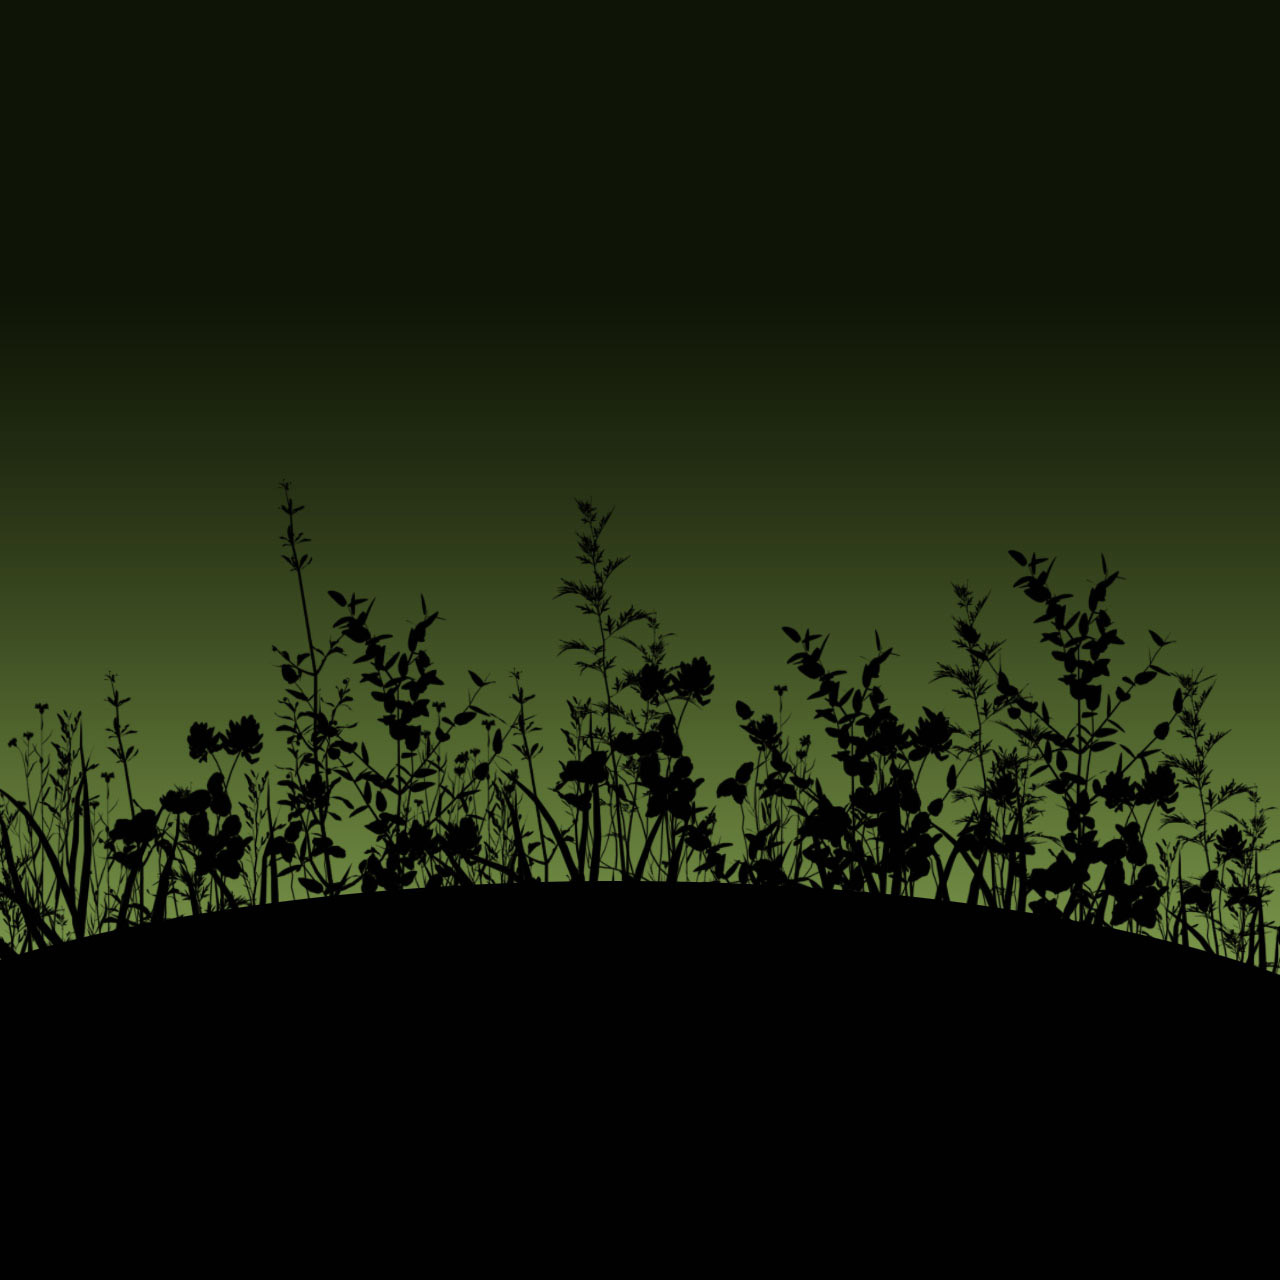 Flower silhouettes on a green dusky sky